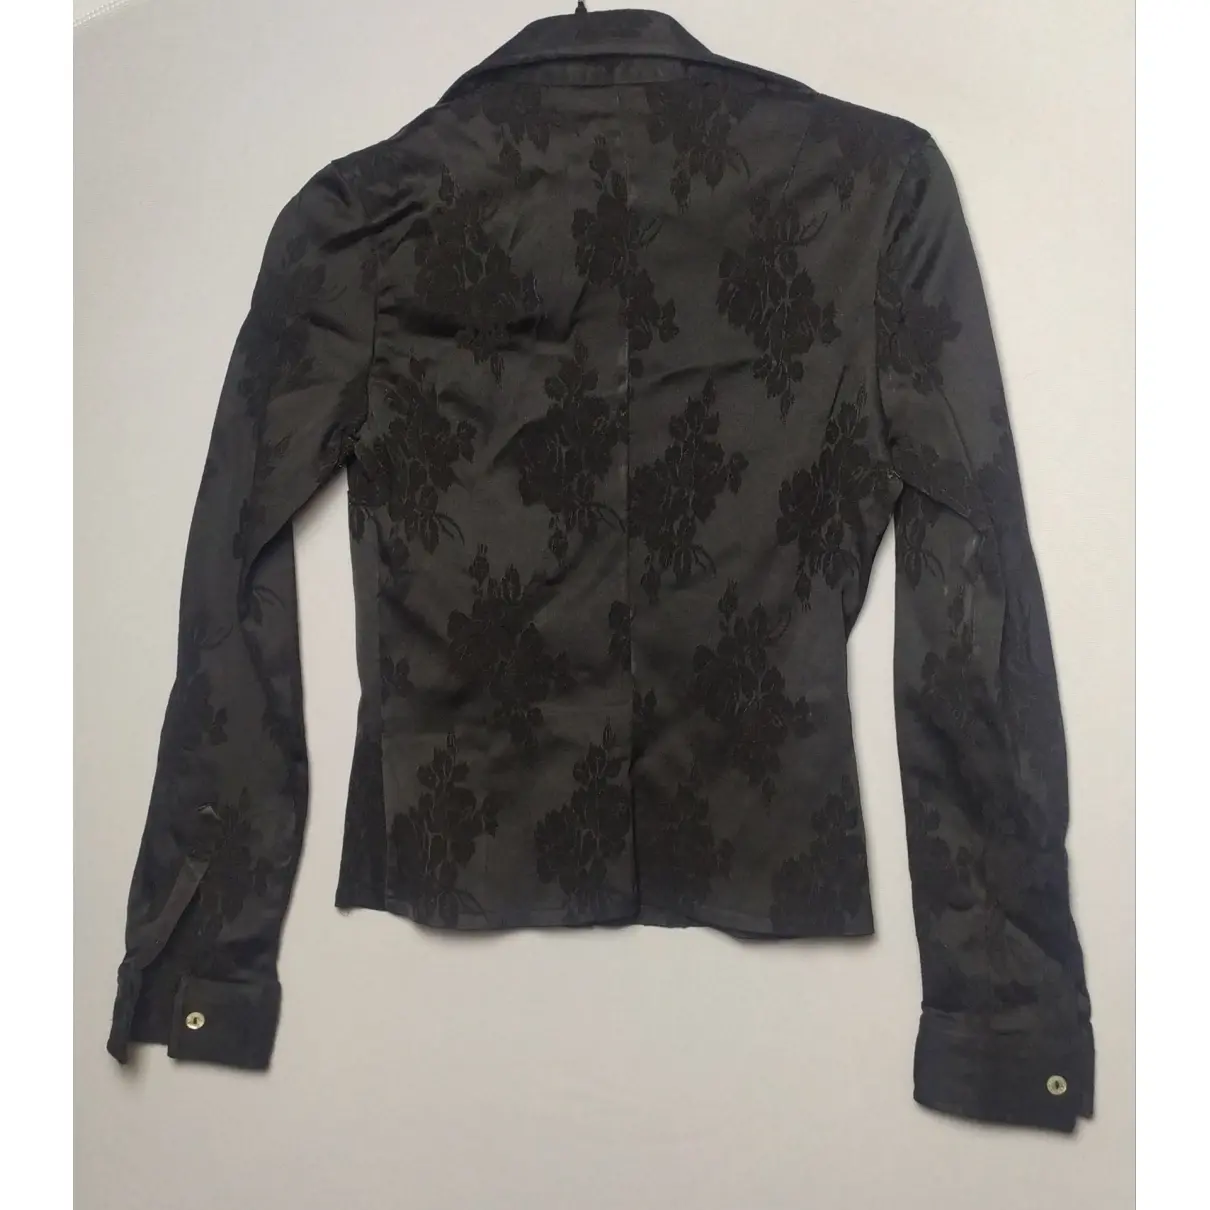 Buy Dries Van Noten Silk shirt online - Vintage